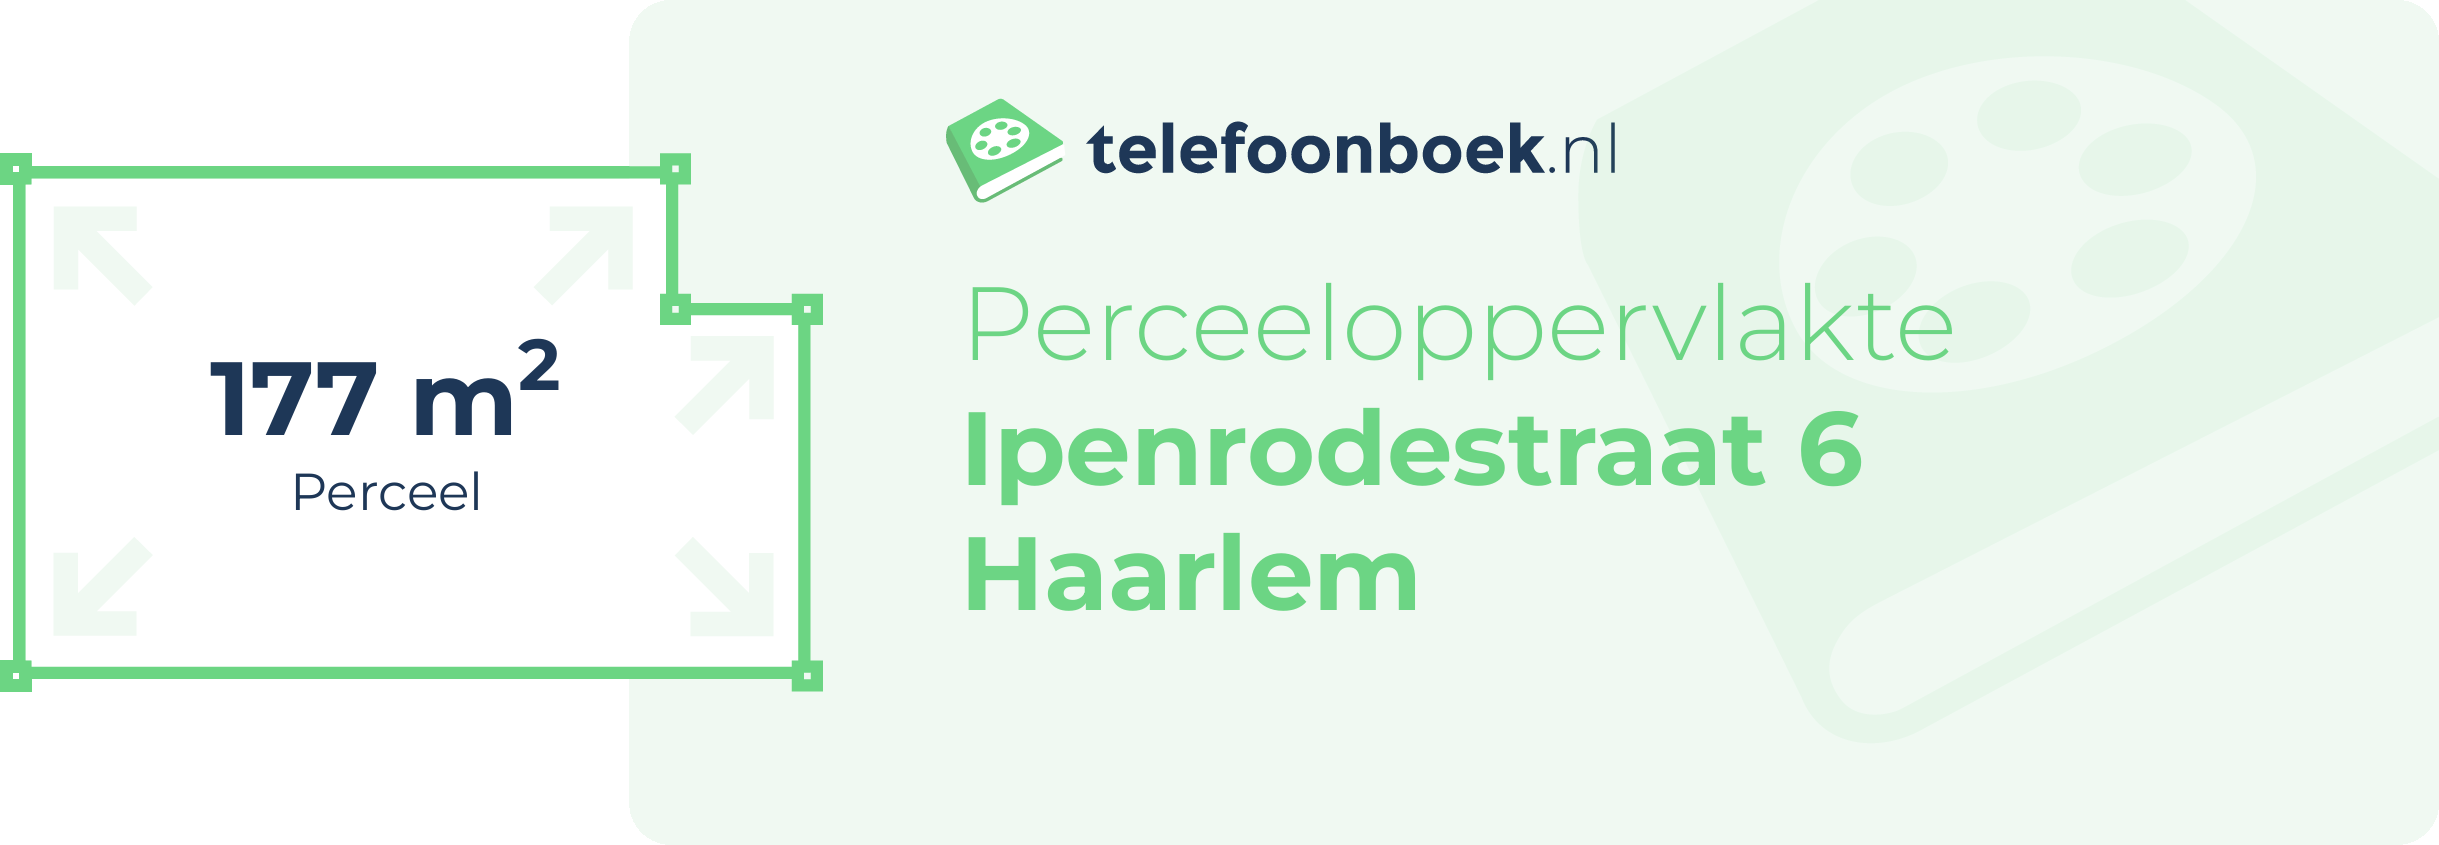 Perceeloppervlakte Ipenrodestraat 6 Haarlem